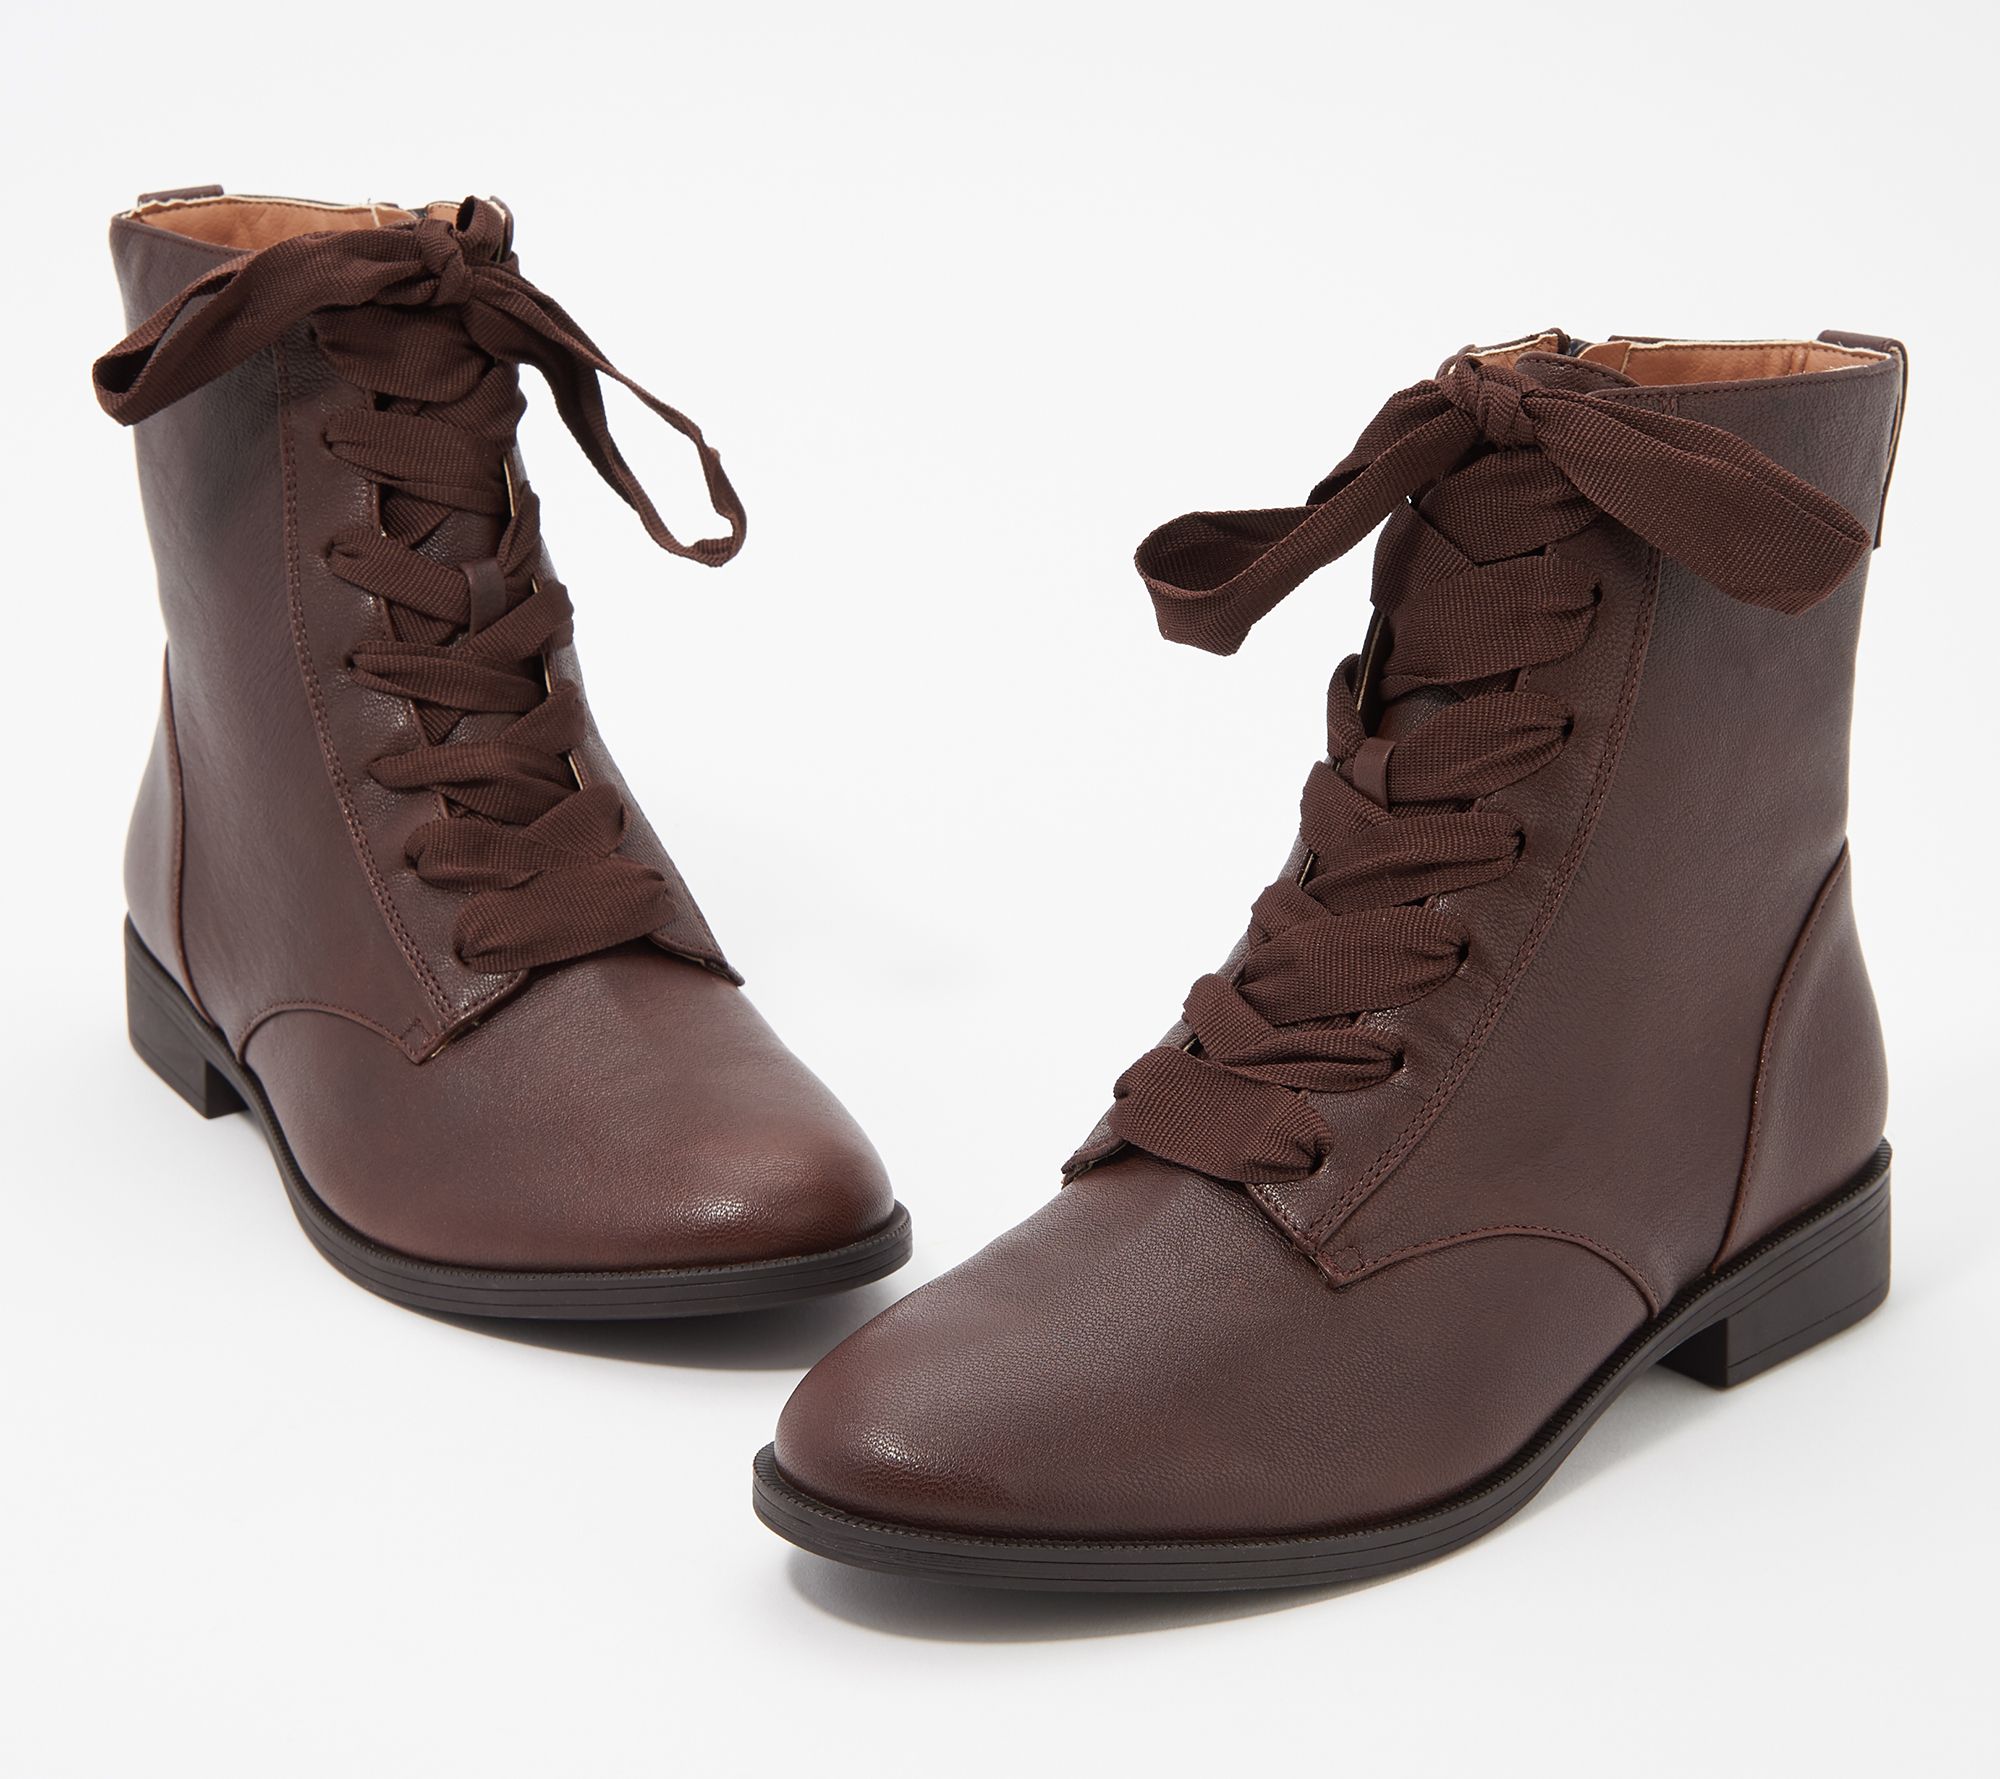 vionic black boots